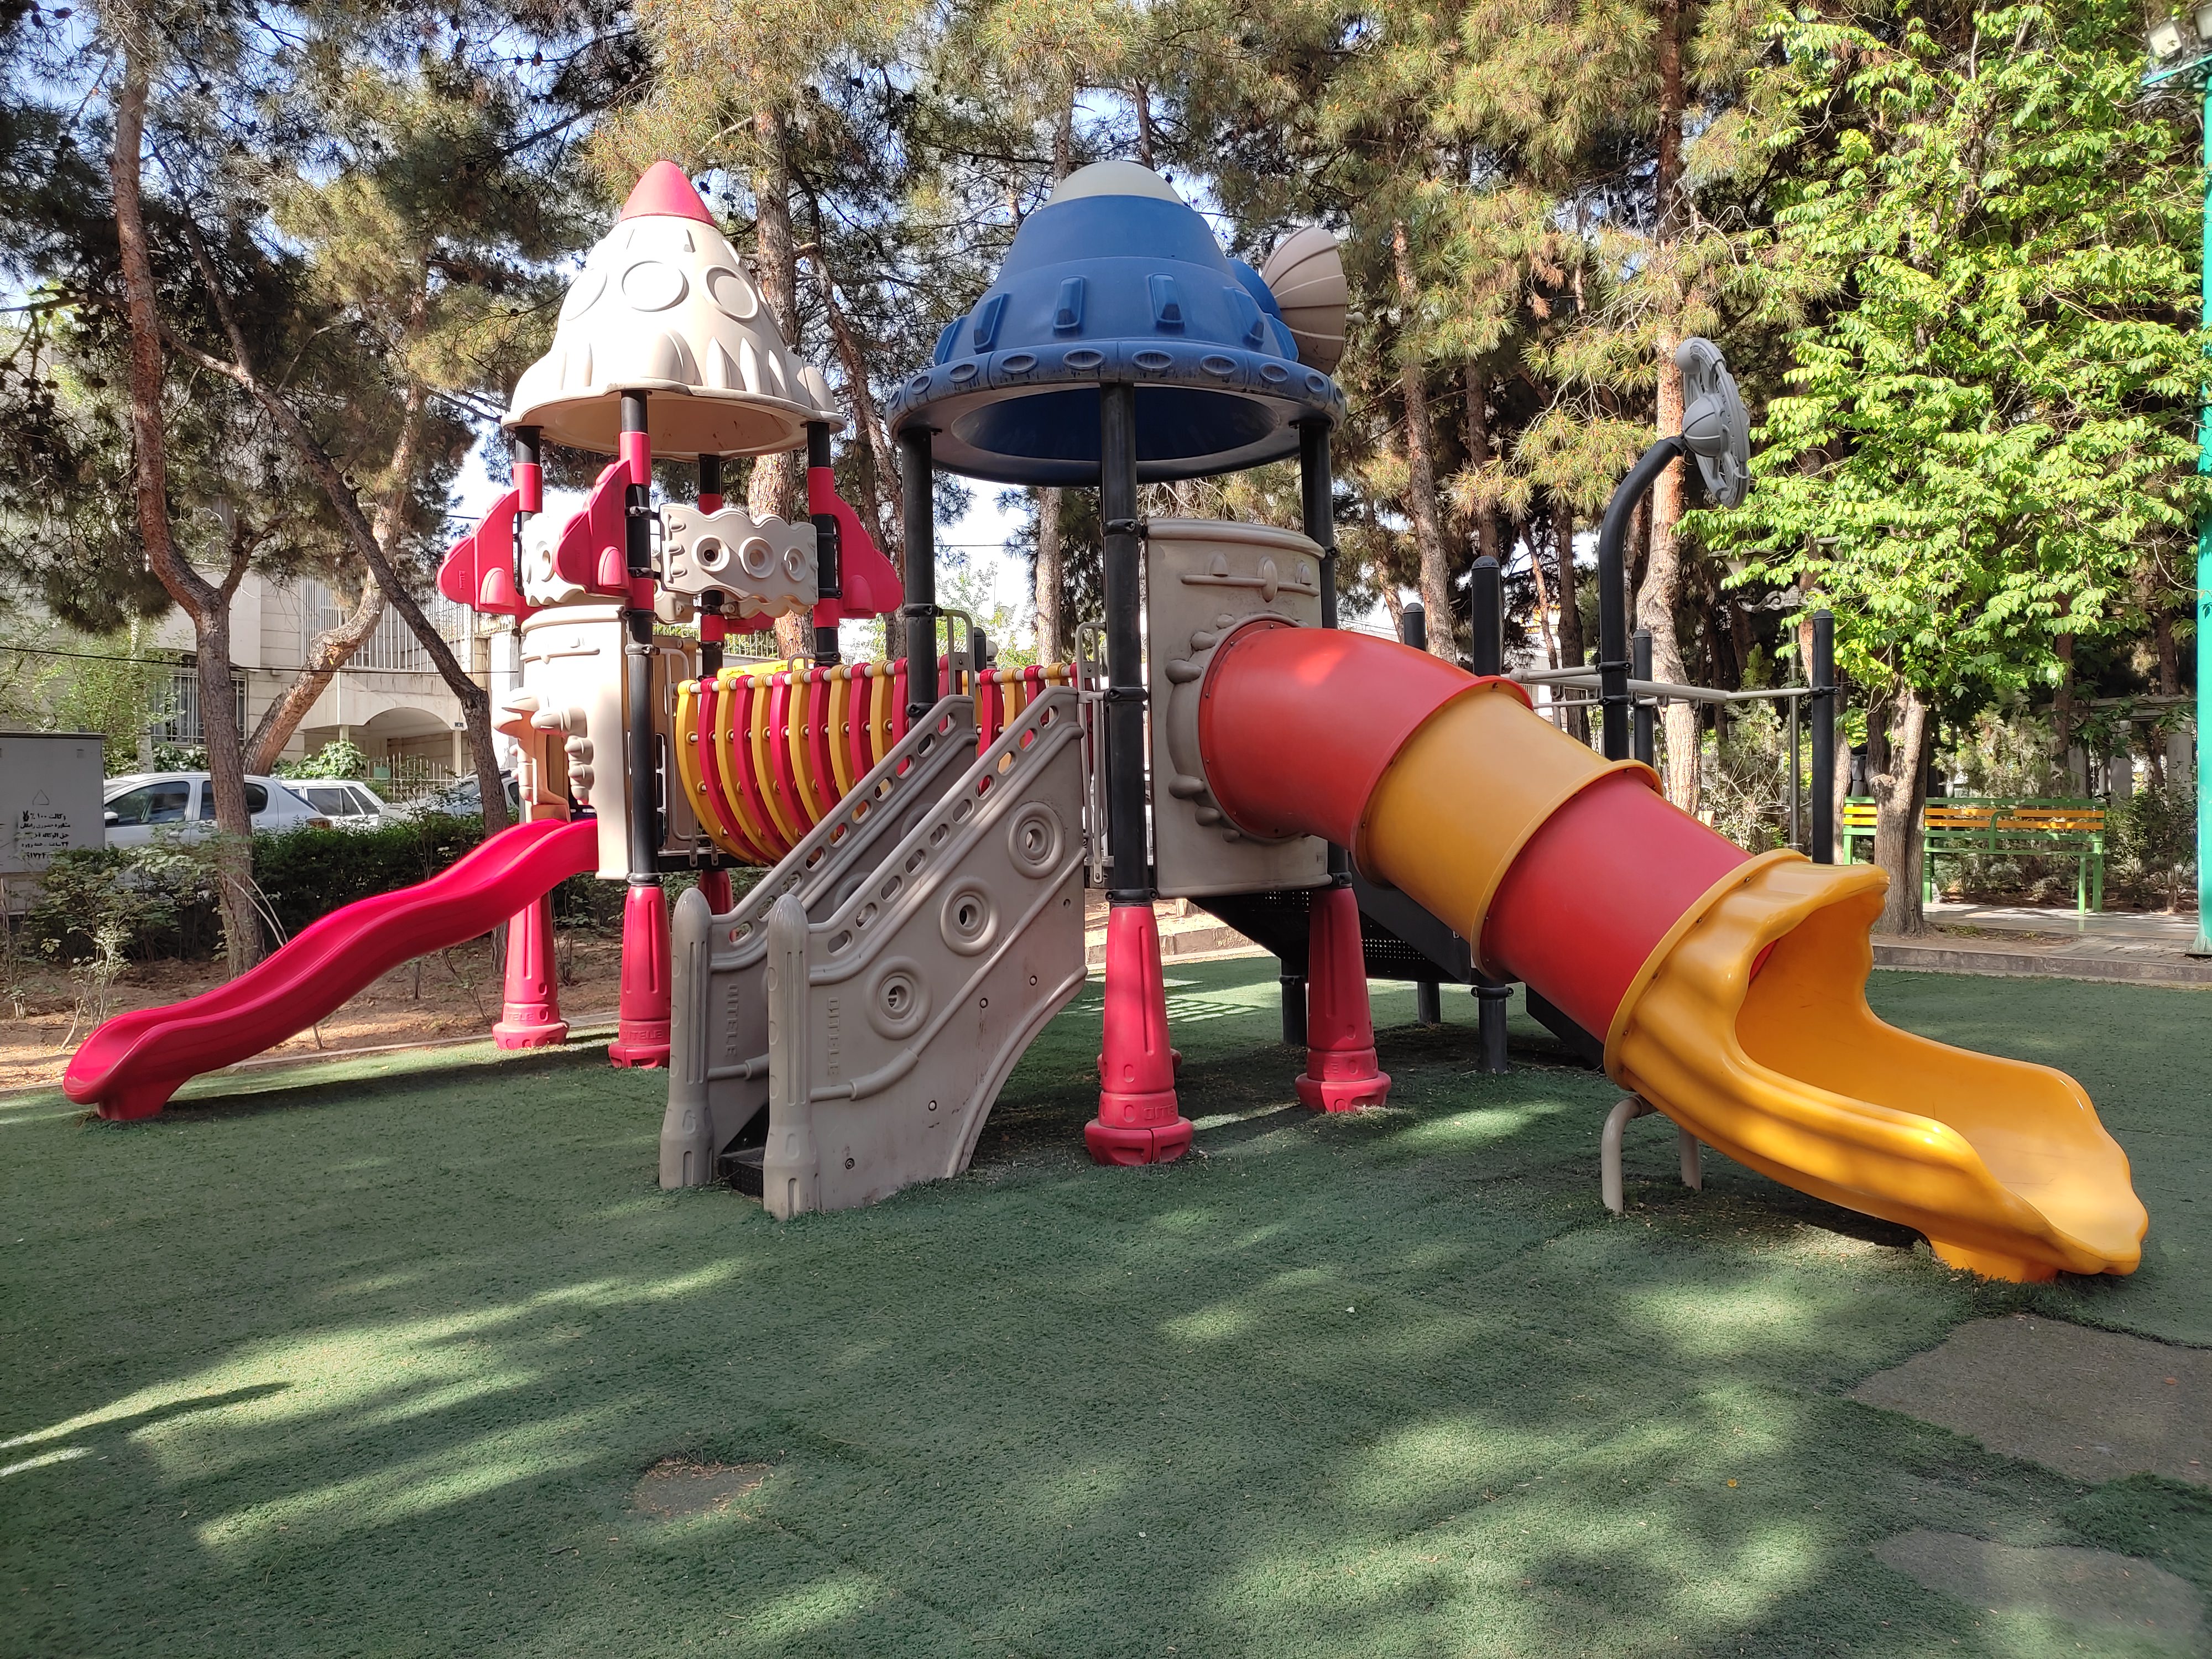 عکس نمونه دوربین اصلی ردمی نوت ۱۰ در نور مناسب - زمین بازی کودک در پارک صبا خیابان جردن